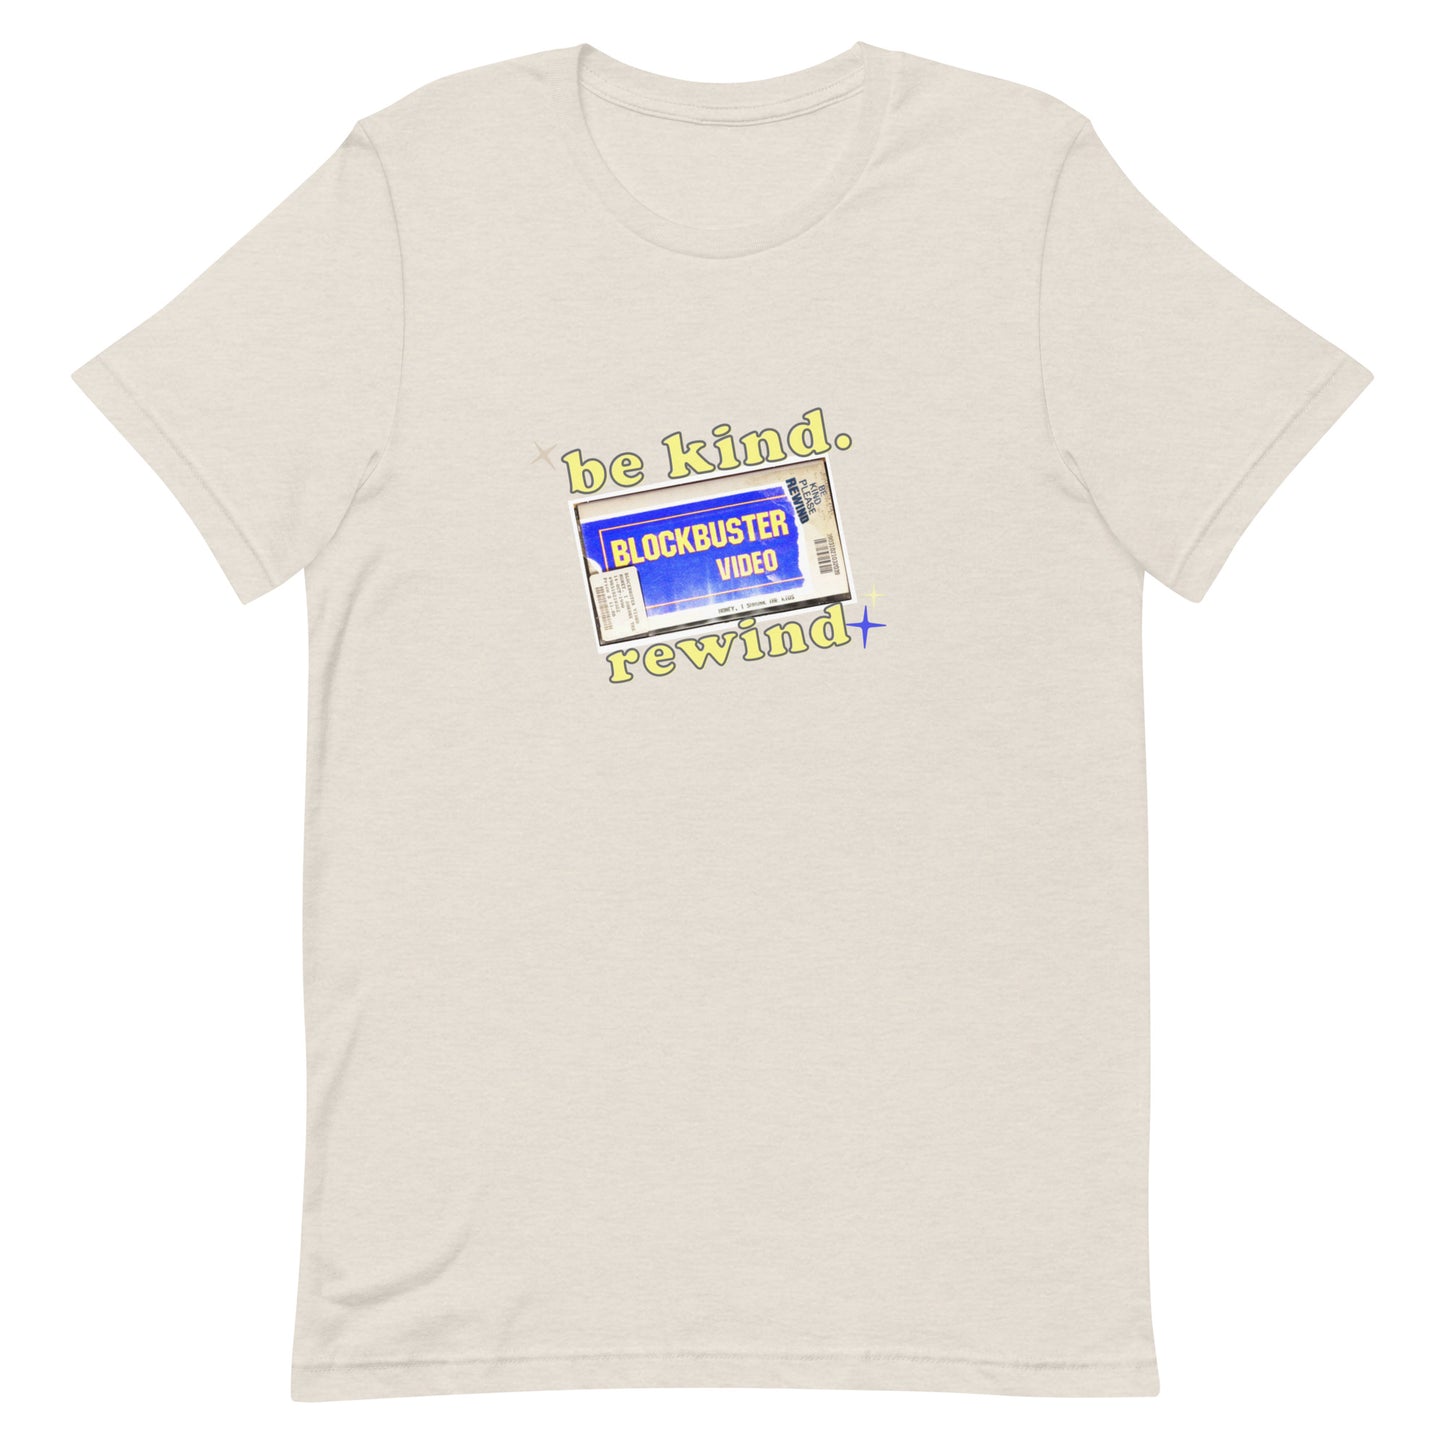 Retro Blockbuster t-shirt